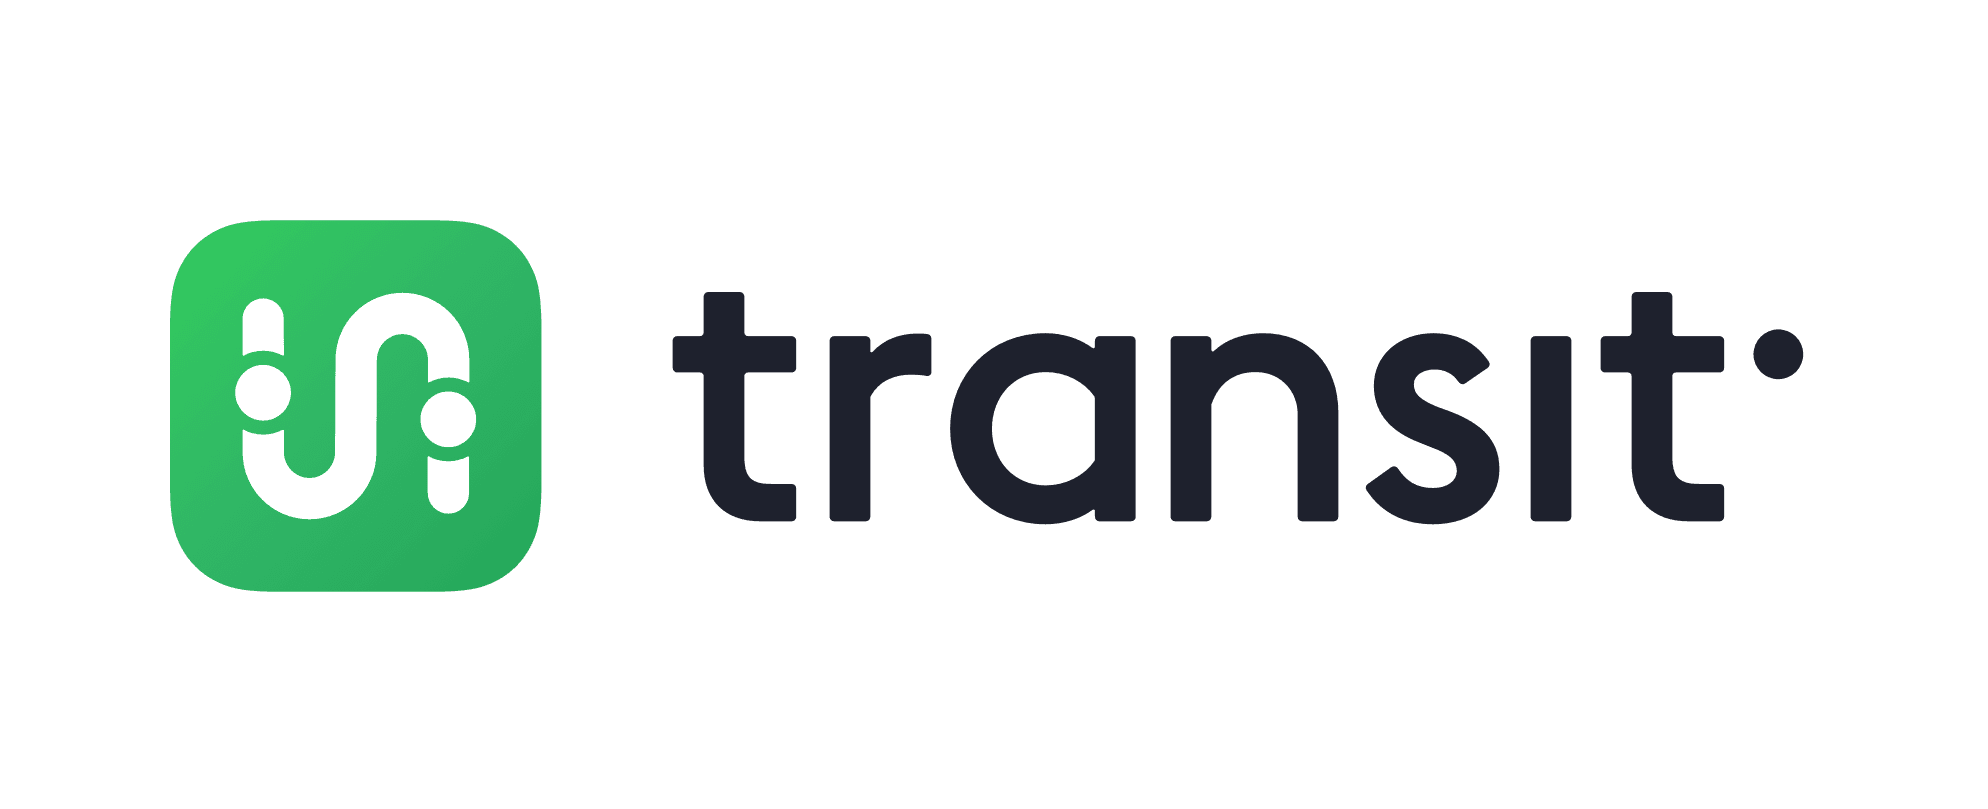 transit-logotype_iOS-dark